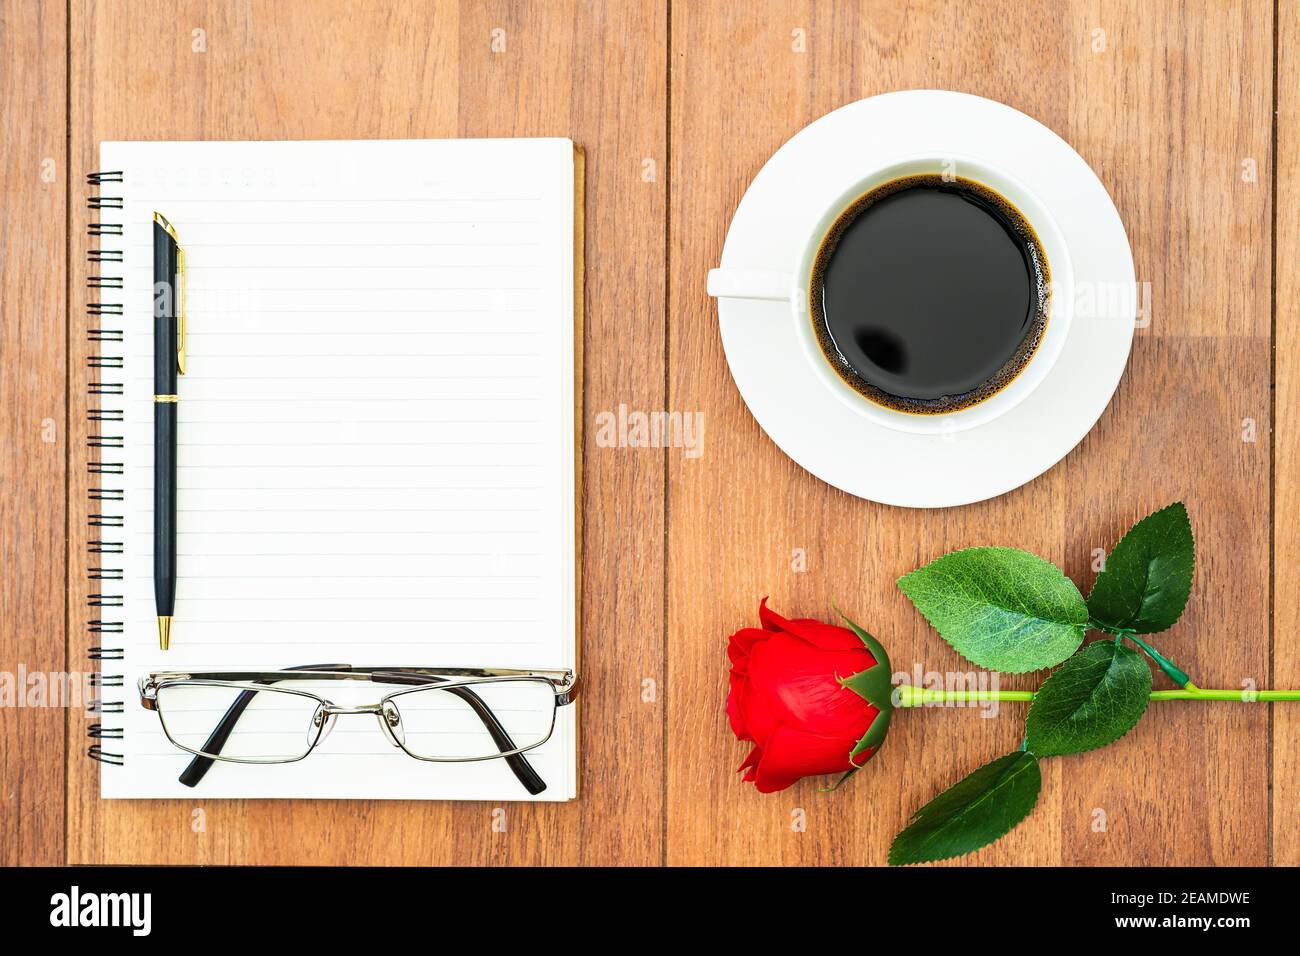 Valentinstagskonzept, rote Rosen auf Holztisch und Notizblock Stockfoto